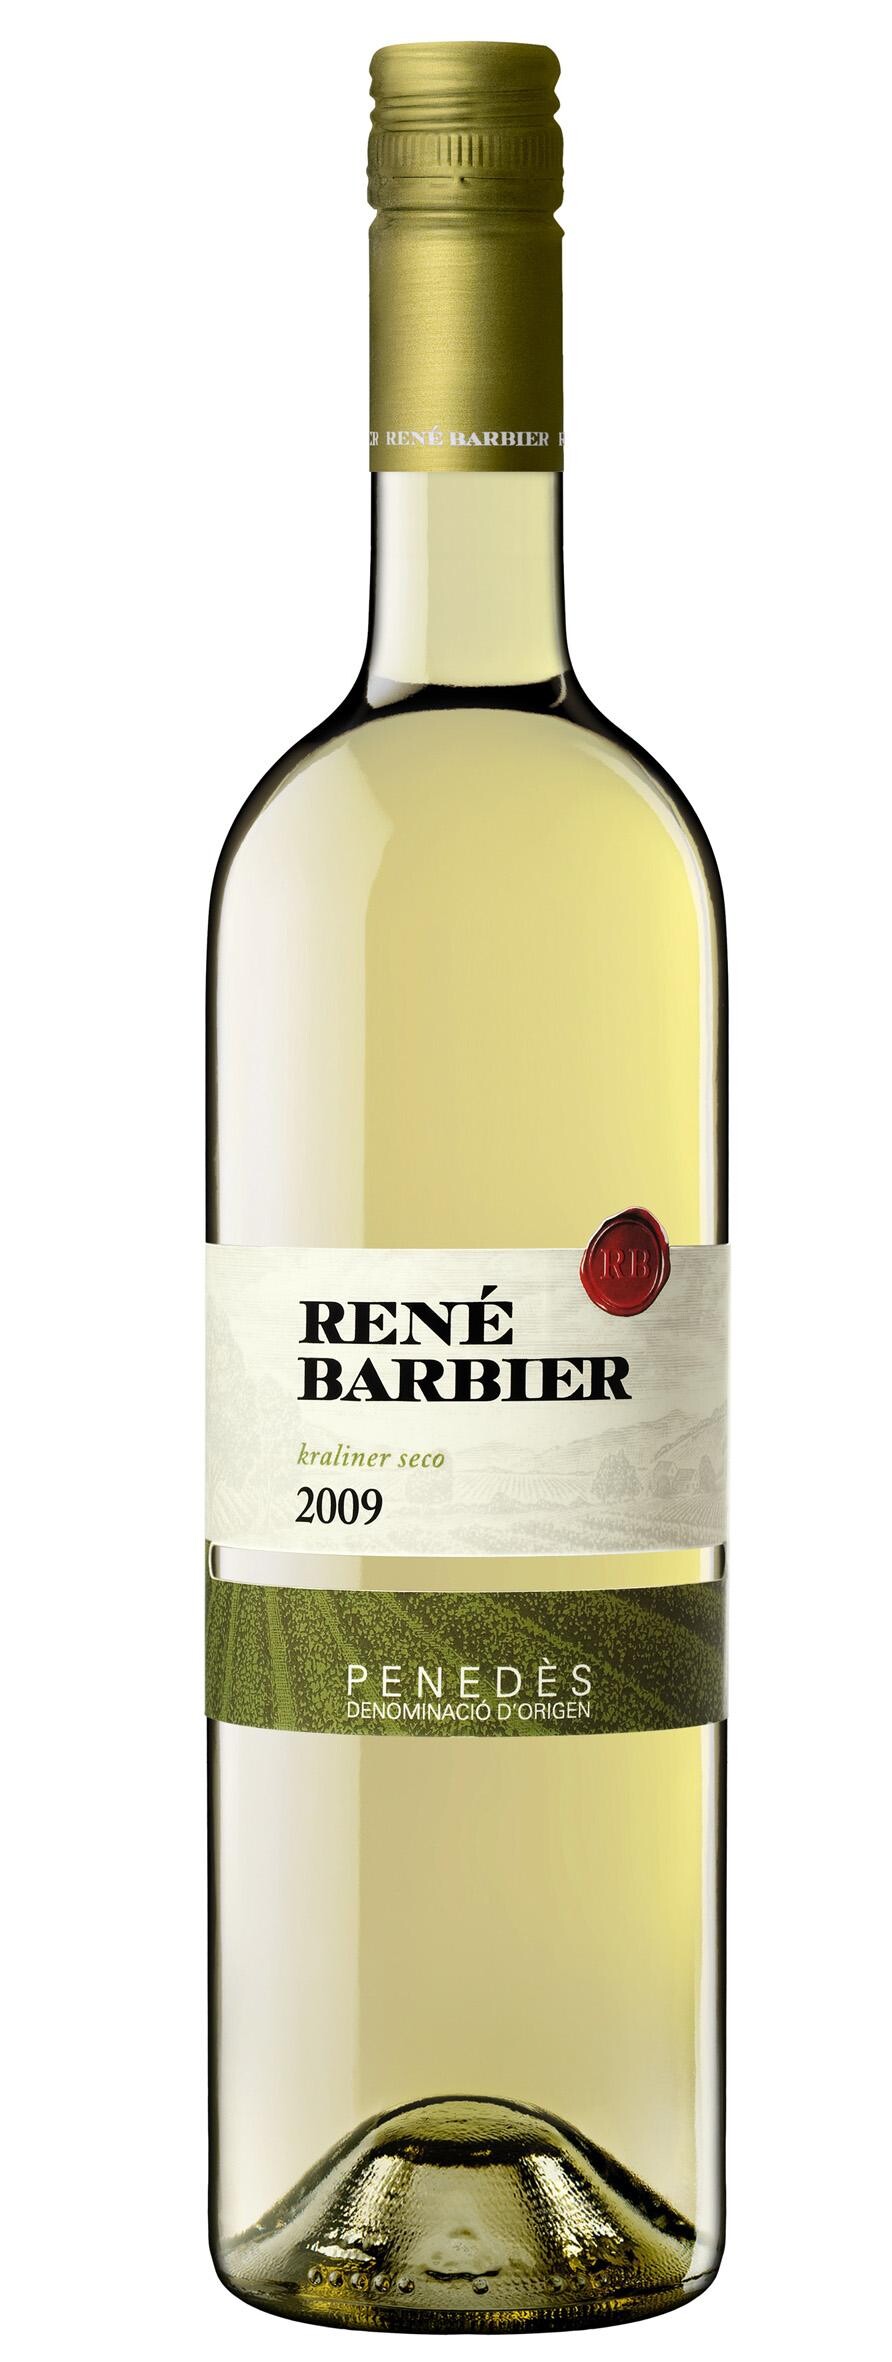 René Barbier white Kraliner seco 75cl Penedes - Spain